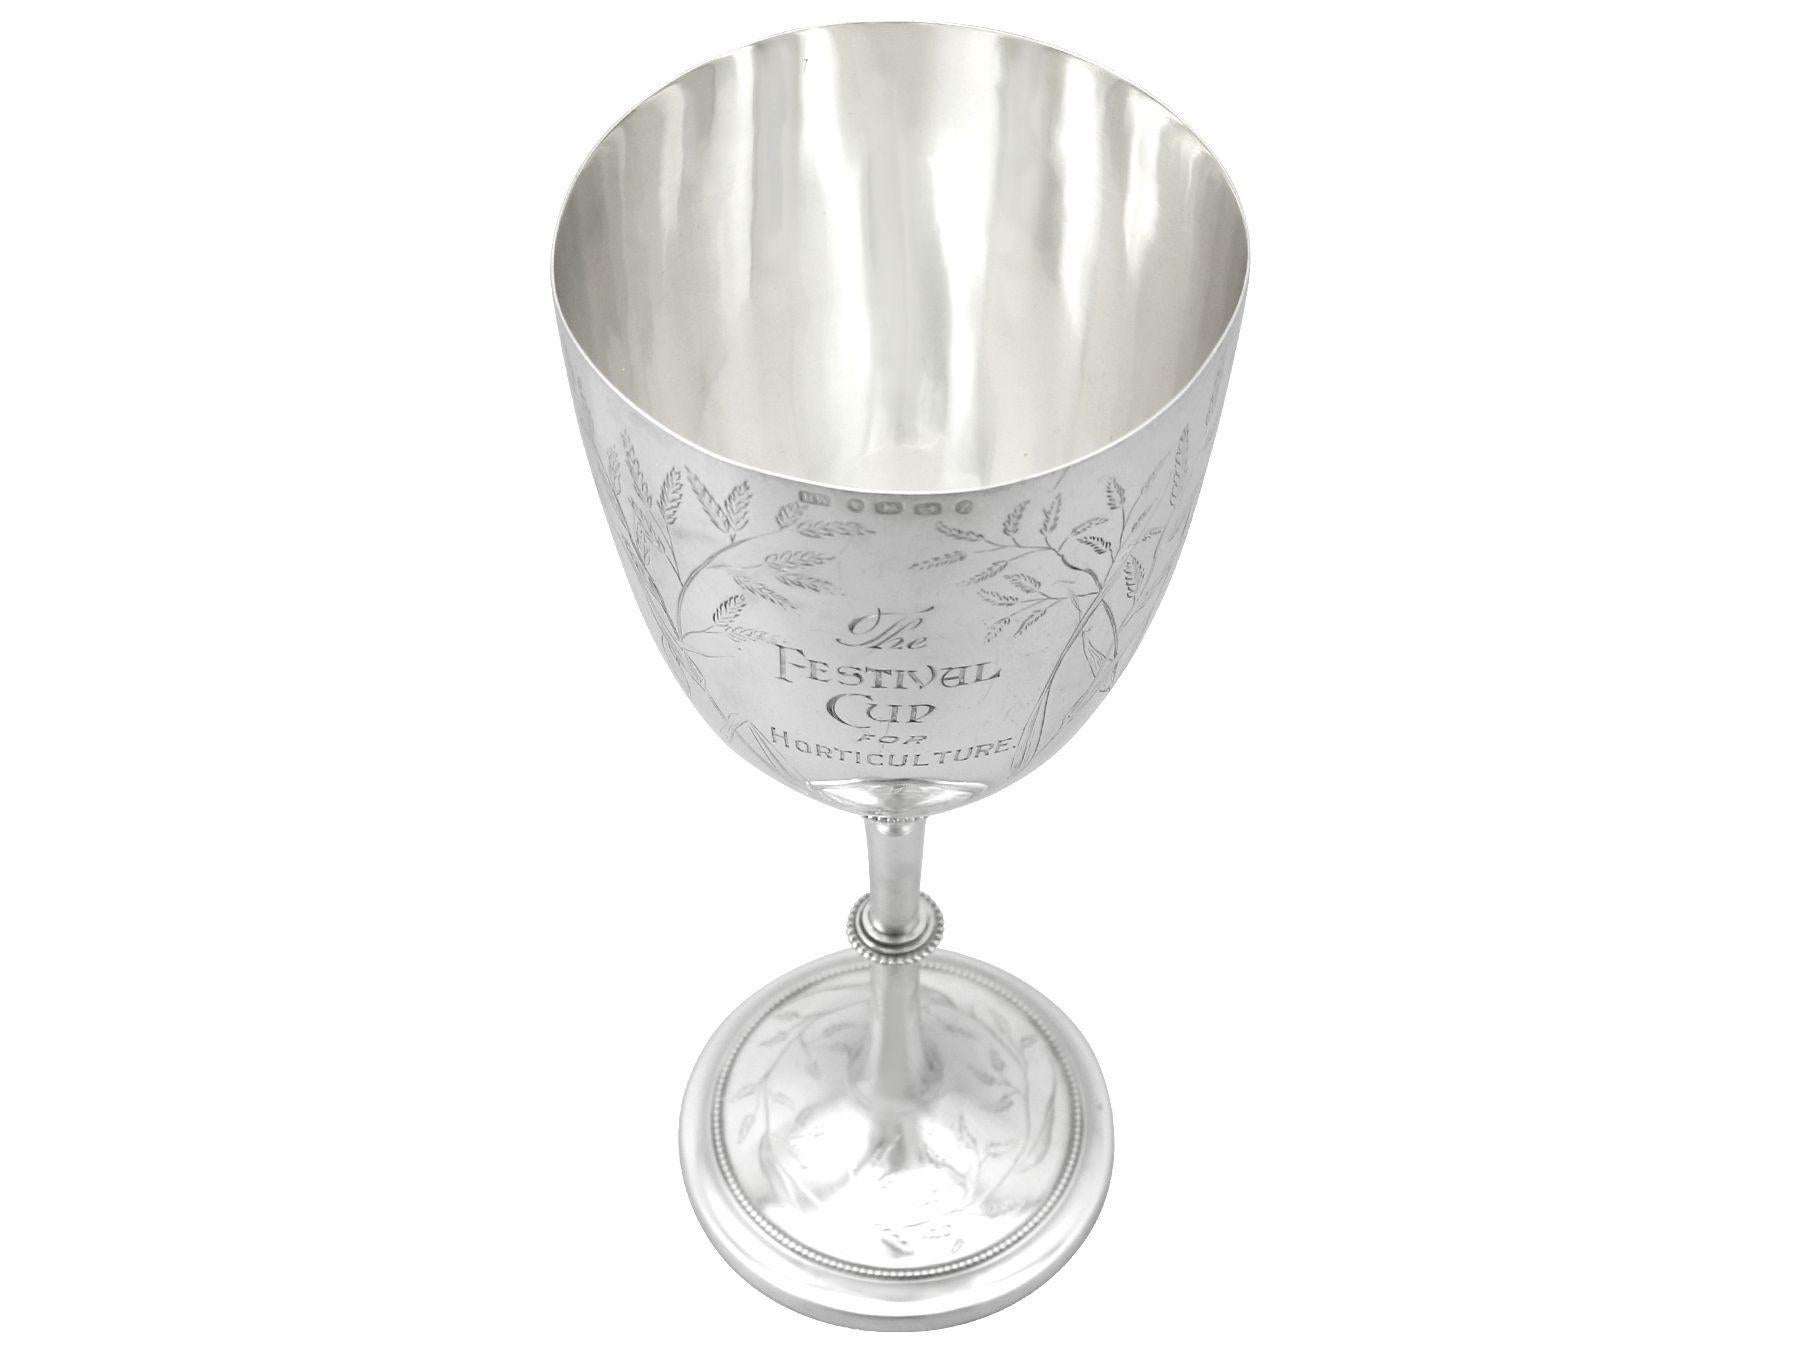 Eine außergewöhnliche, feine und beeindruckende, seltene antike viktorianische englische Sterling Silber Präsentation Kelch / Tasse; eine Ergänzung zu unserer Sammlung von Präsentation im Zusammenhang mit Silberwaren.

Diese außergewöhnliche